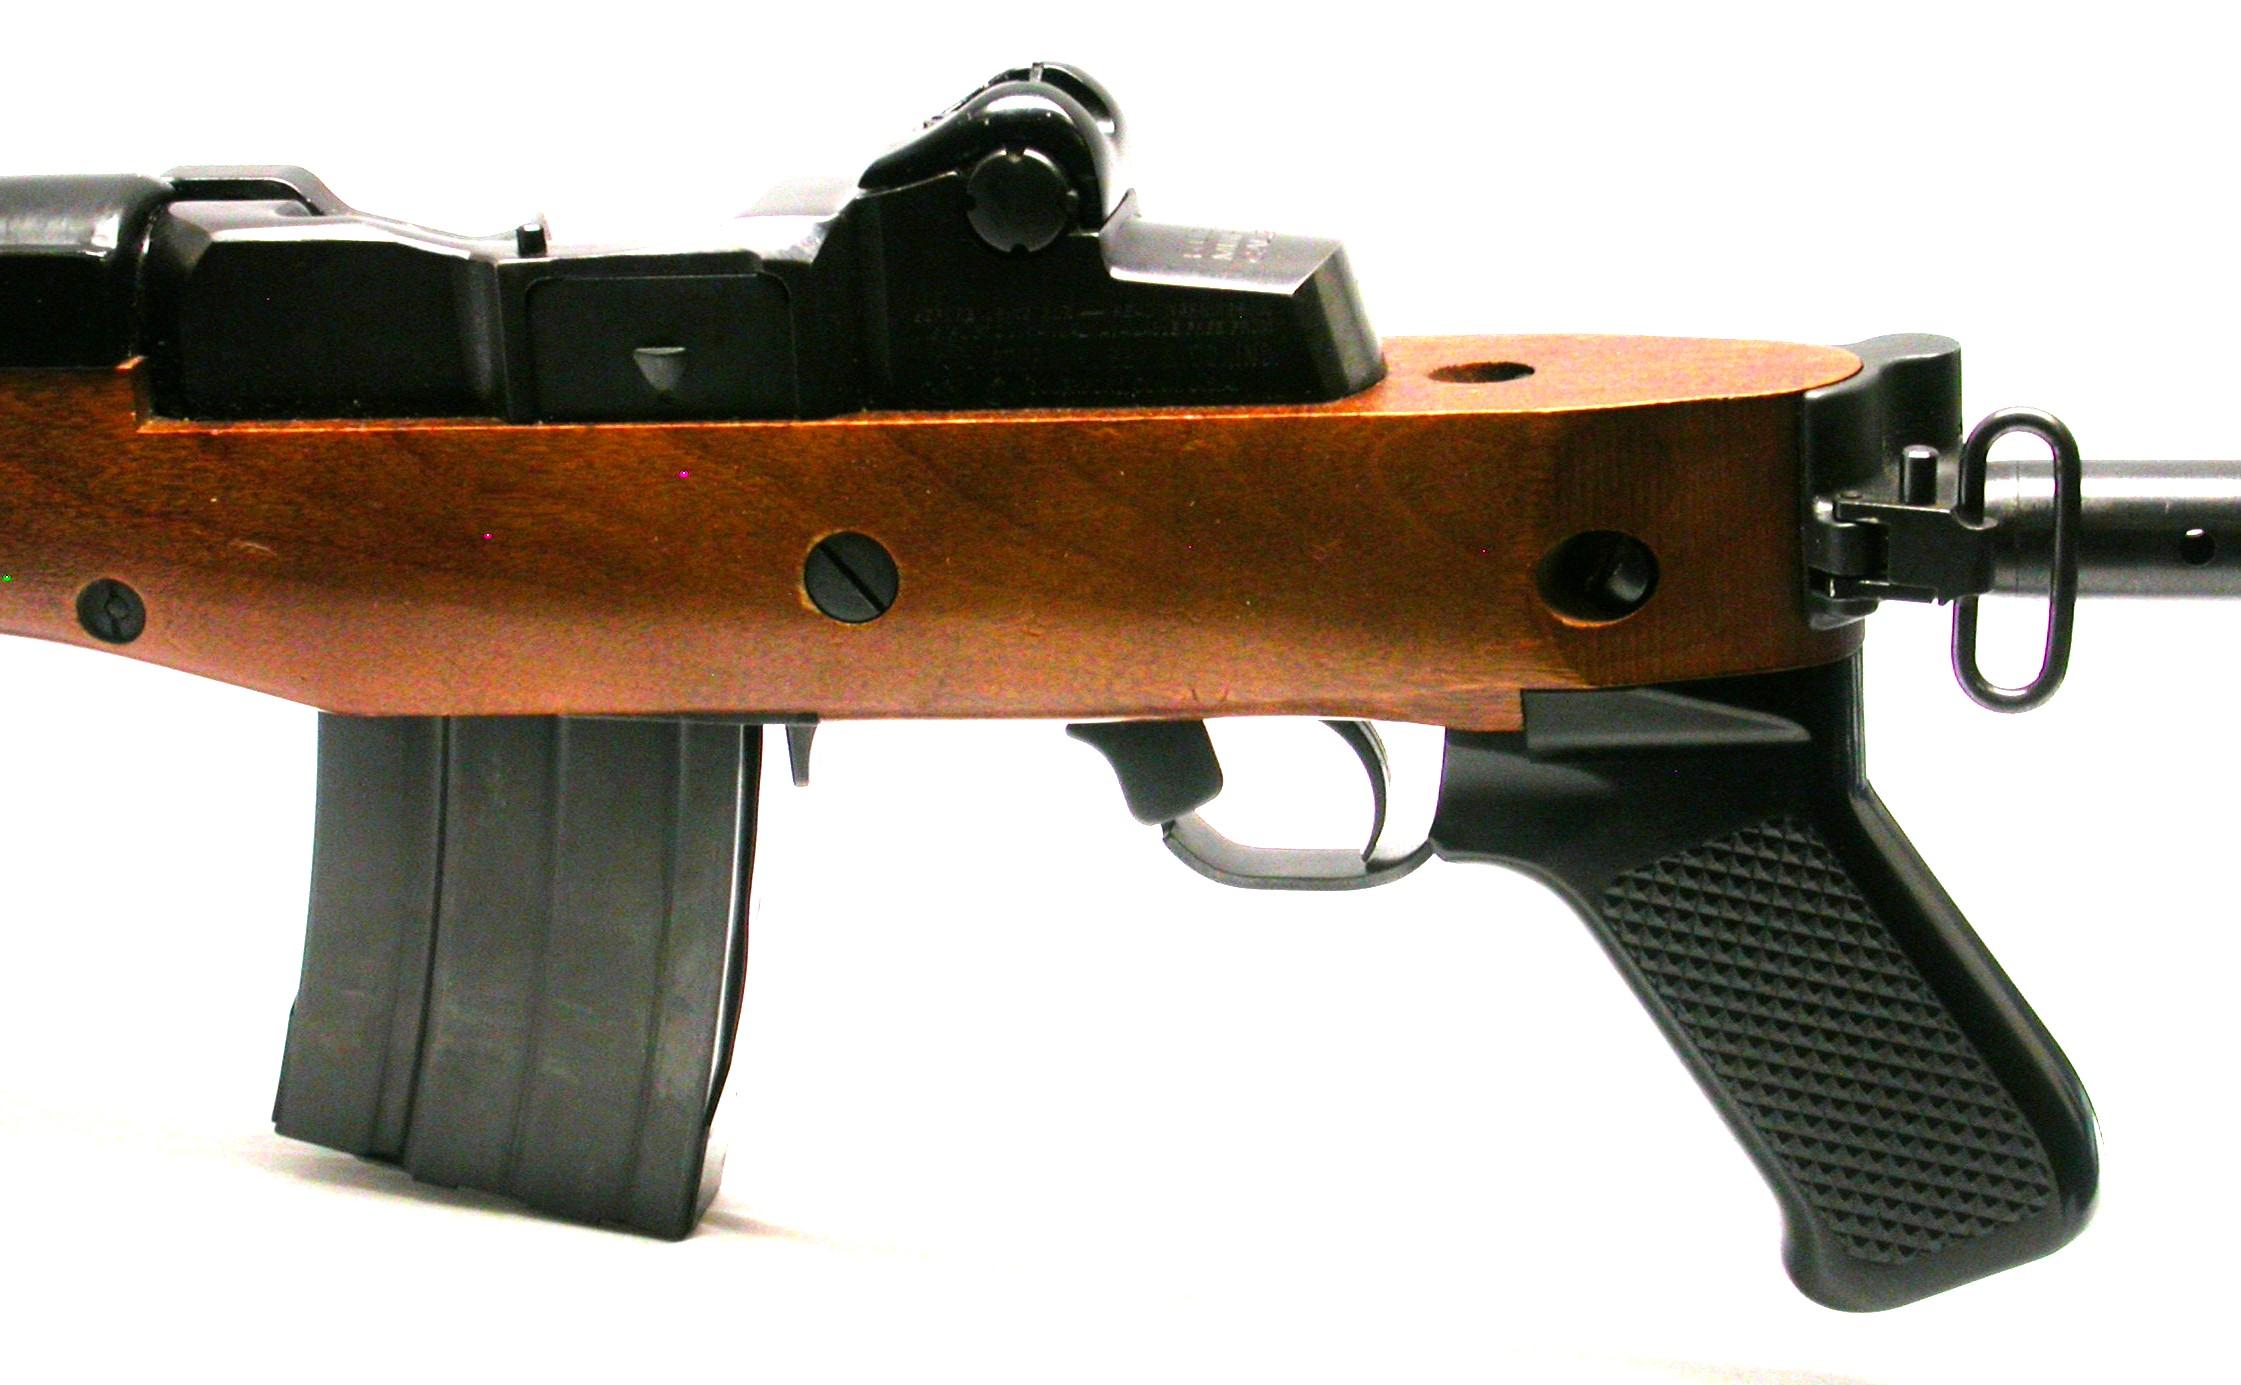 Ruger Mini-14 .223/5.56mm Semi-Automatic Ranch Rifle - FFL #183-52983 (CYM)